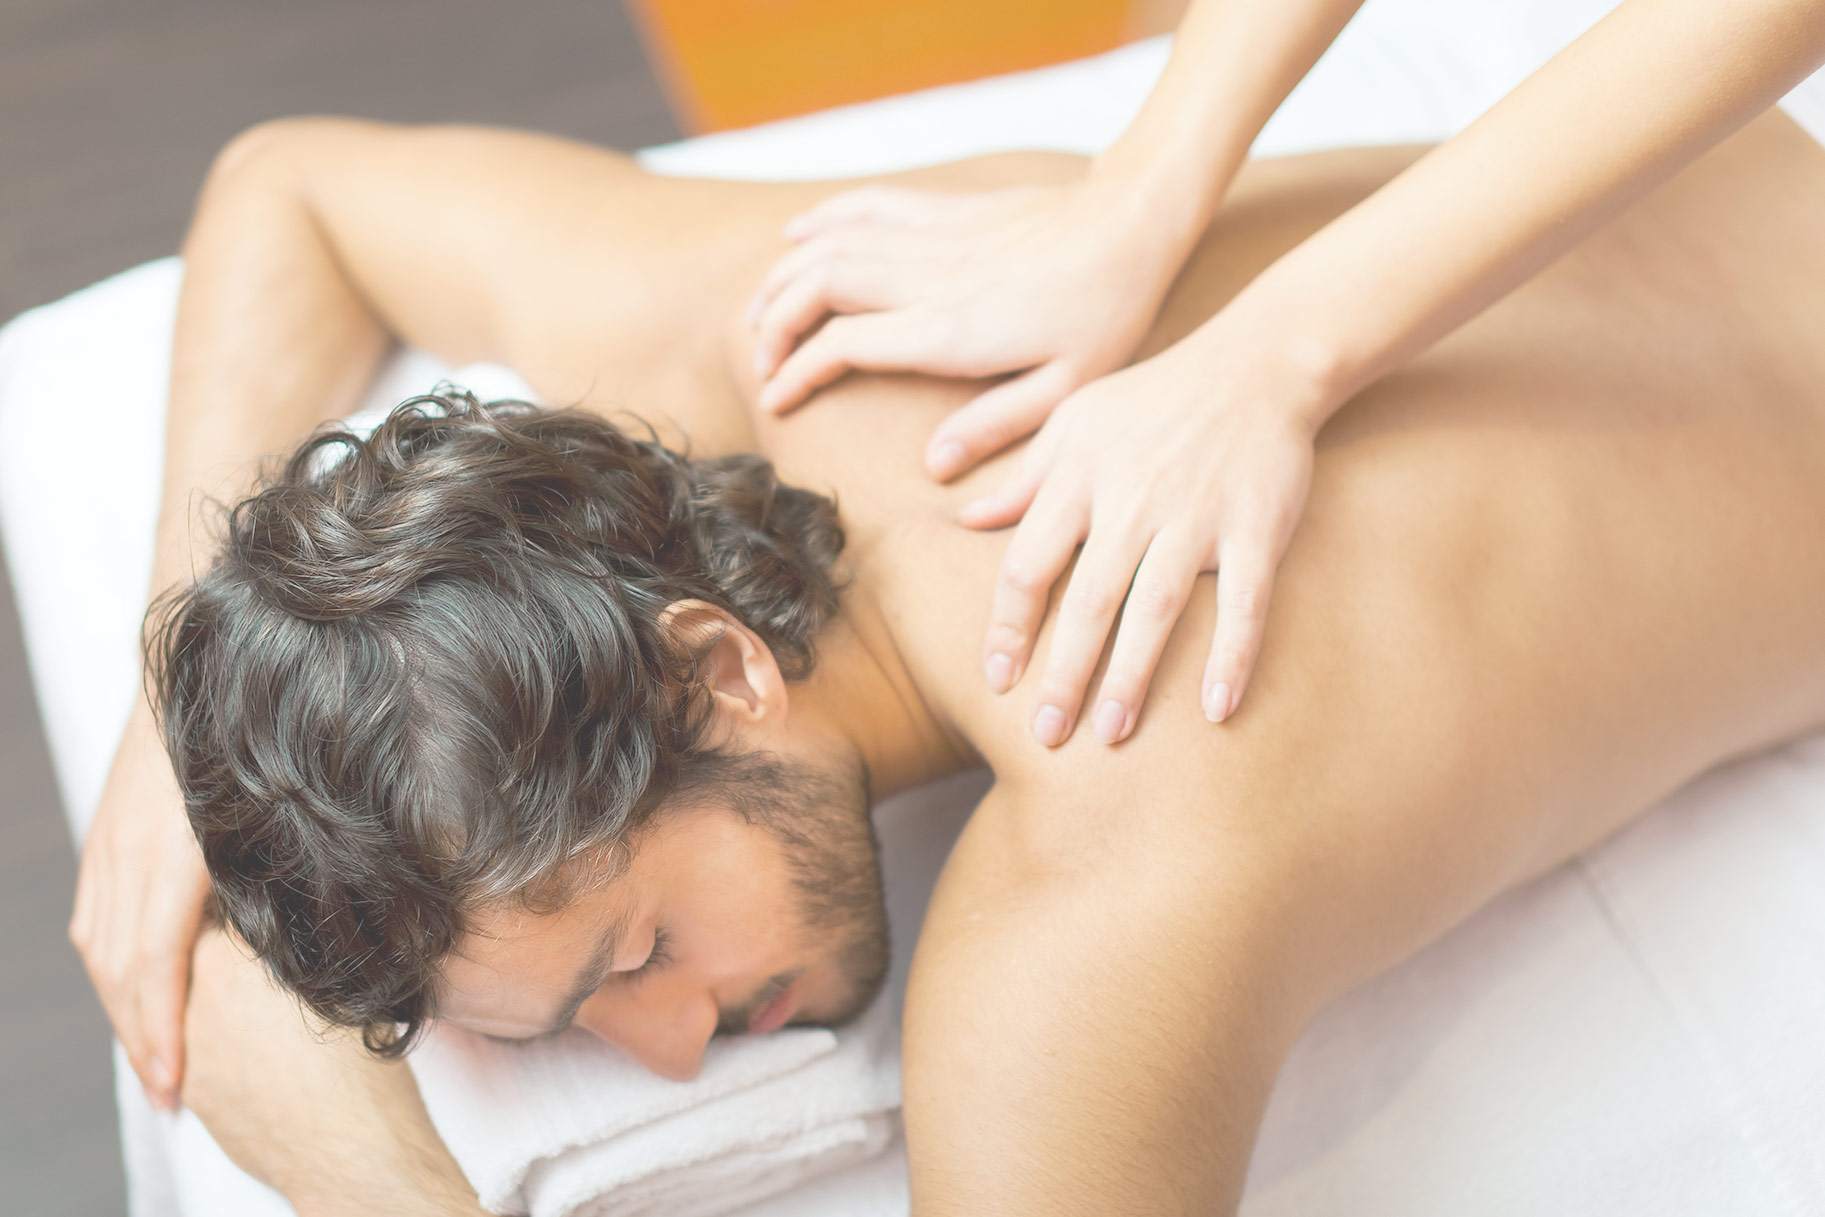 billy schauer share wife tricked during massage photos